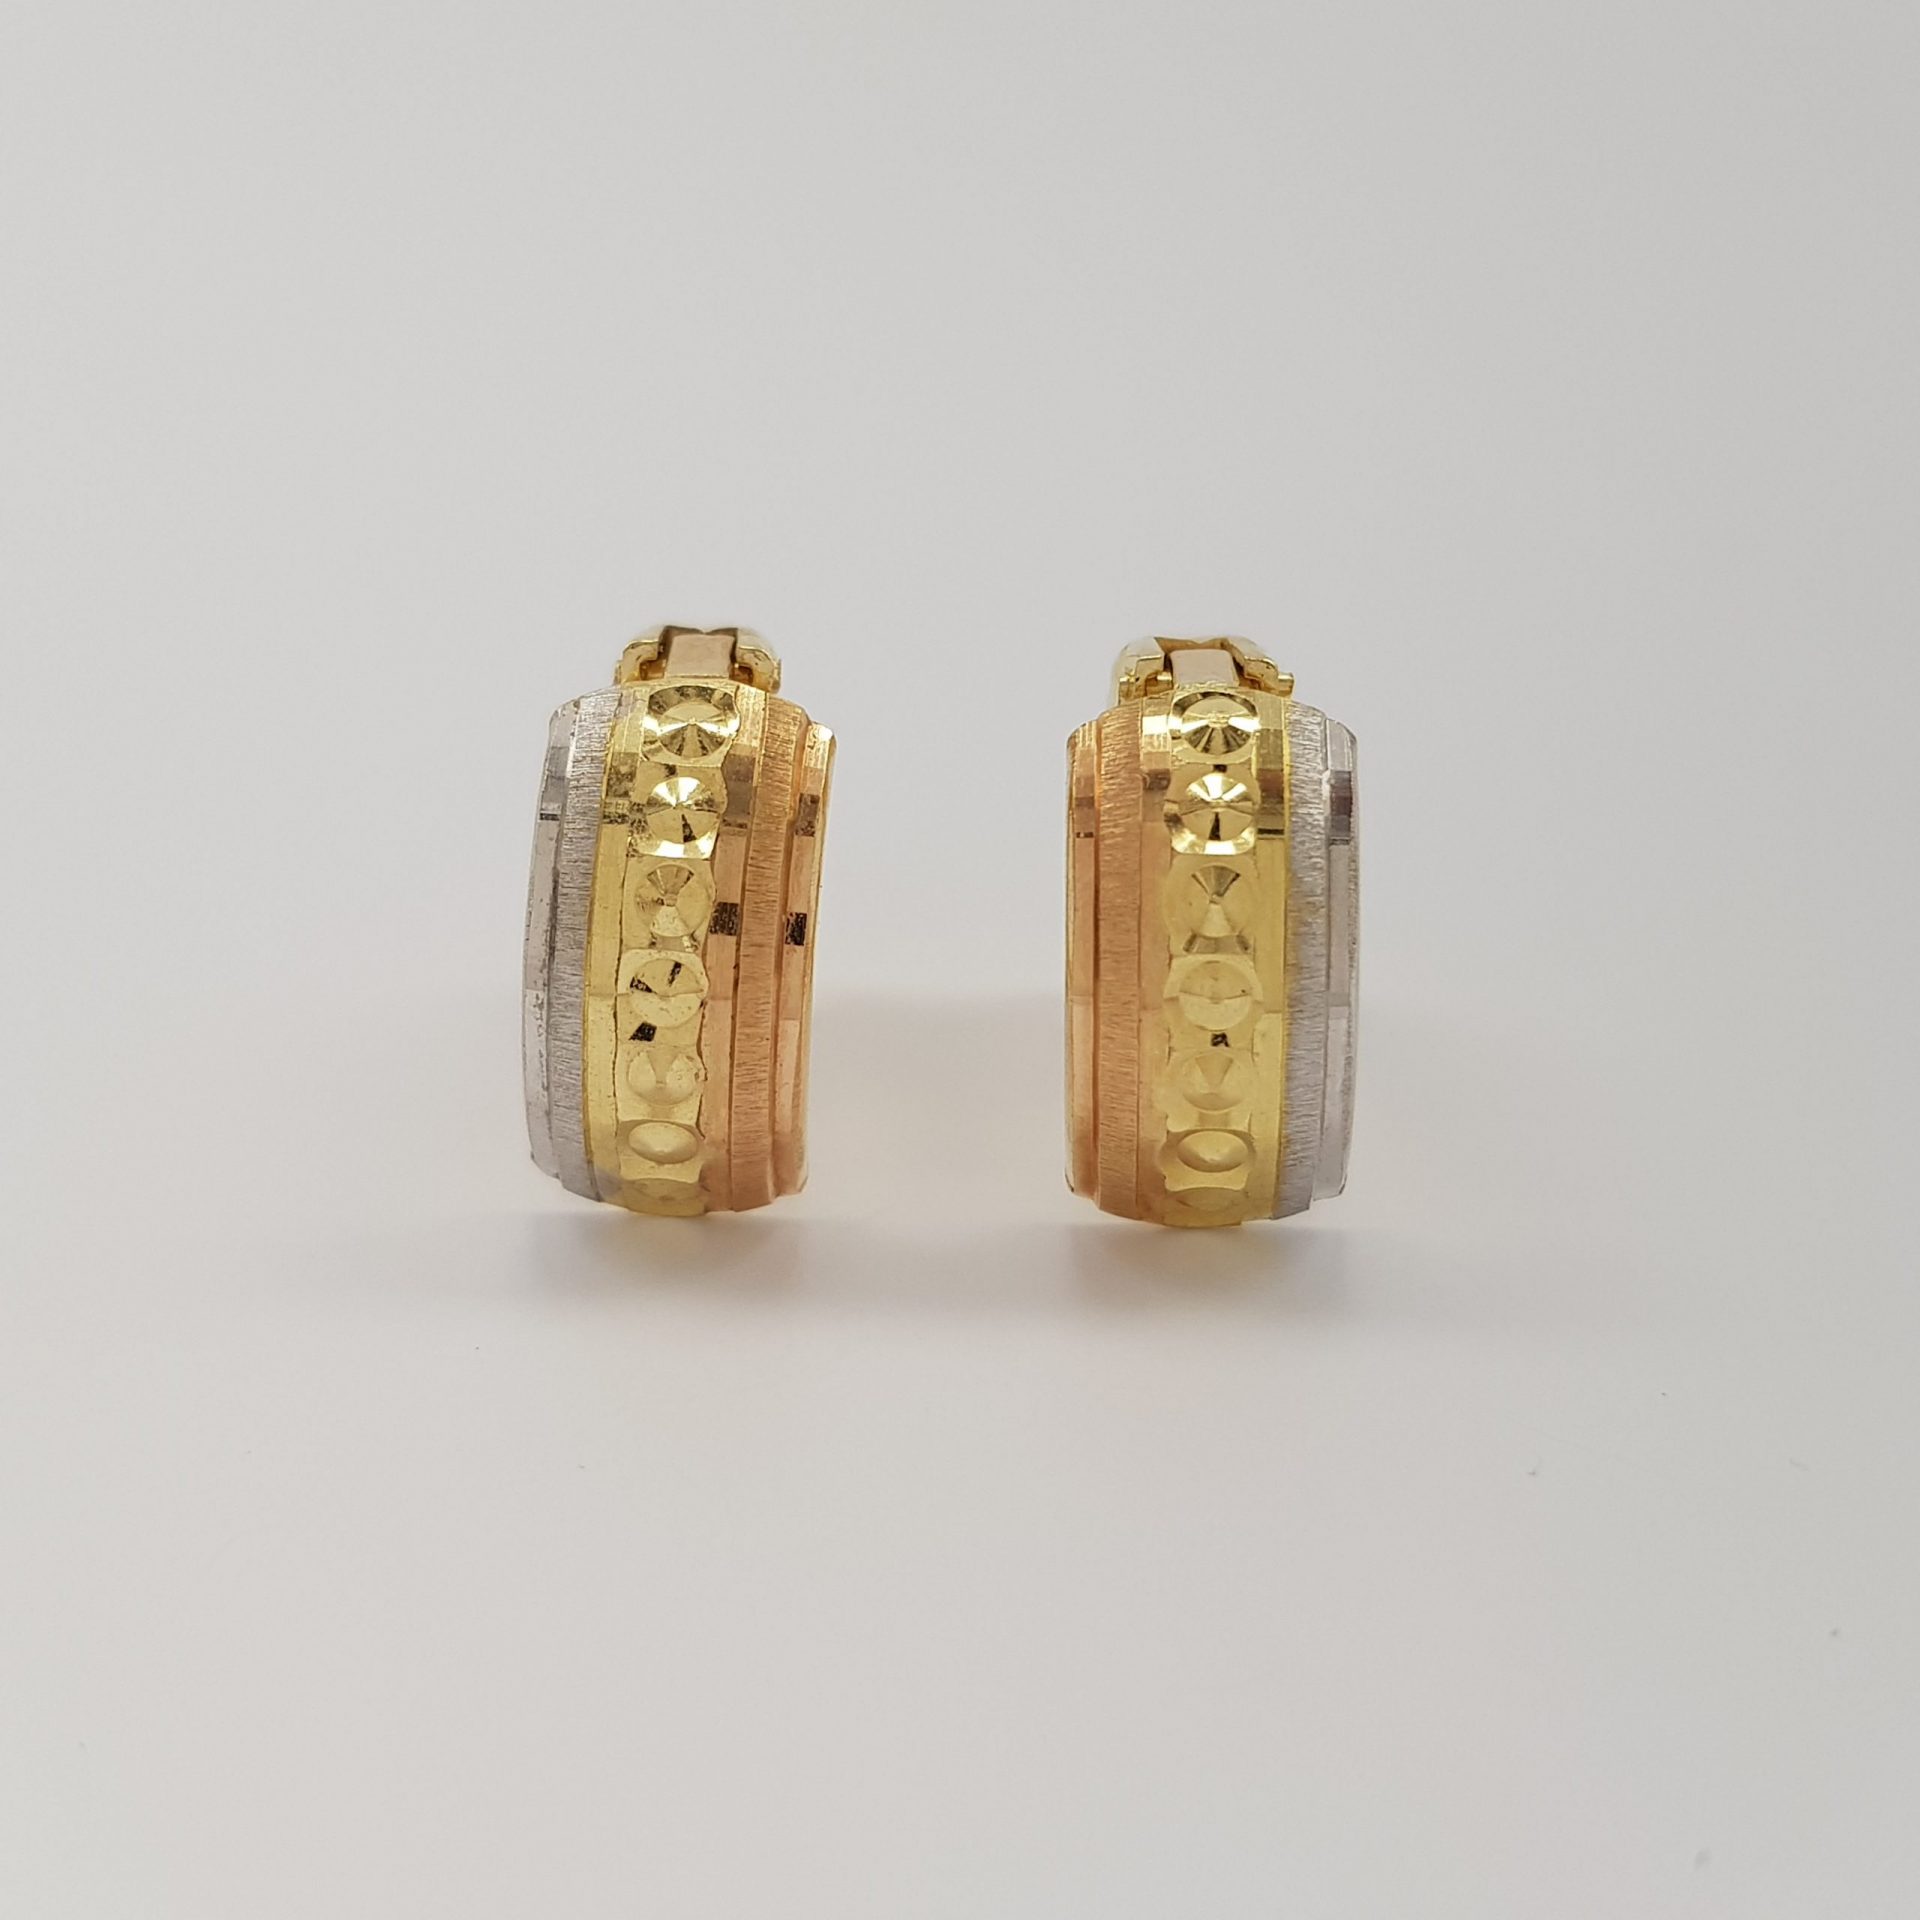 Z greckim wzorem - kolczyki złote wykonane w żółtym, białym i czerwonym złocie